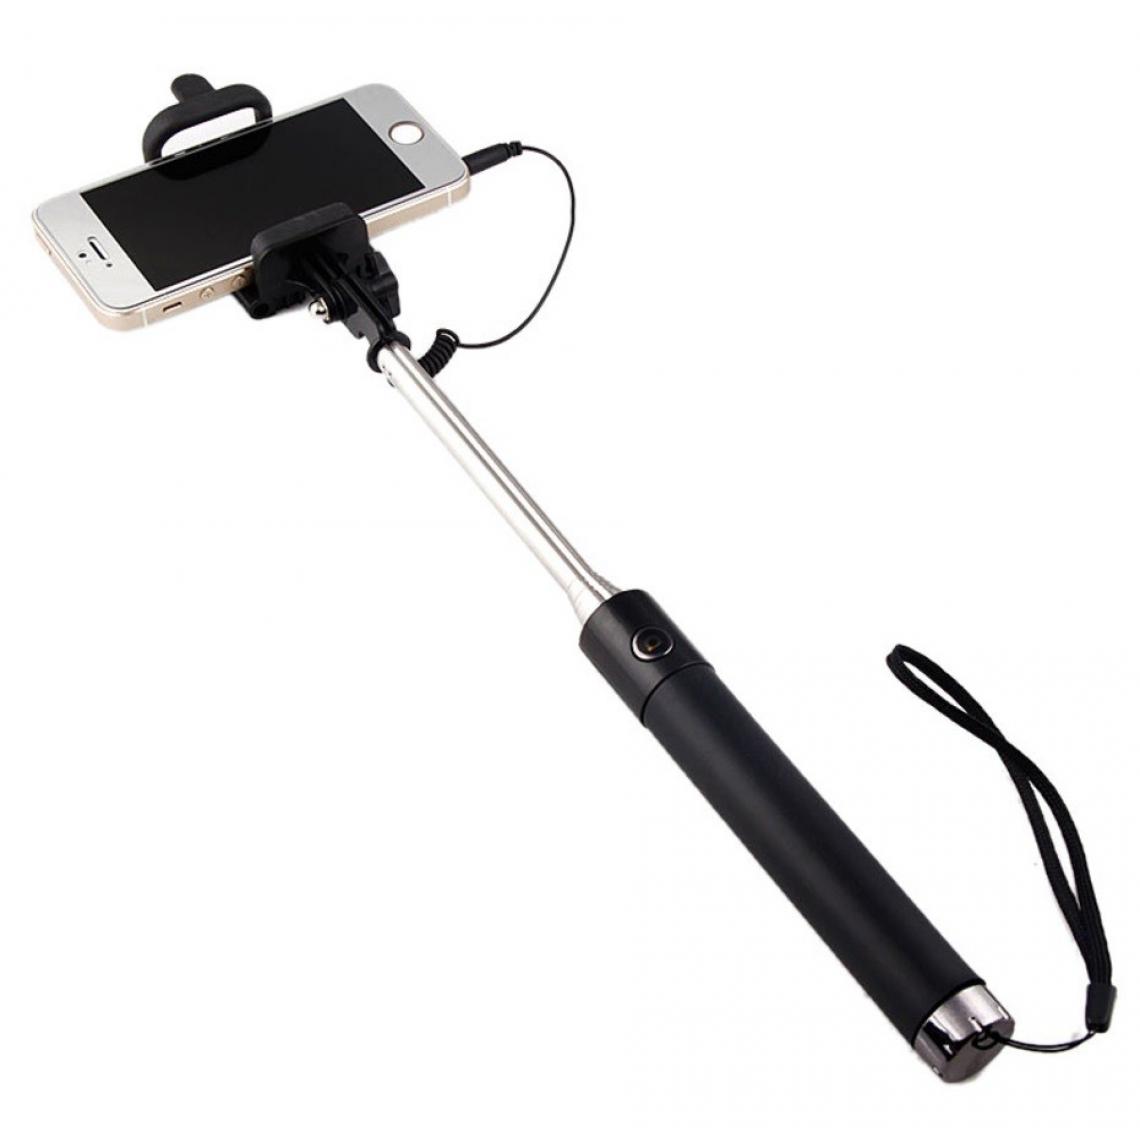 Shot - Perche Selfie Metal pour HUAWEI P smart Z Smartphone avec Cable Jack Selfie Stick Android IOS Reglable Bouton Photo (NOIR) - Autres accessoires smartphone